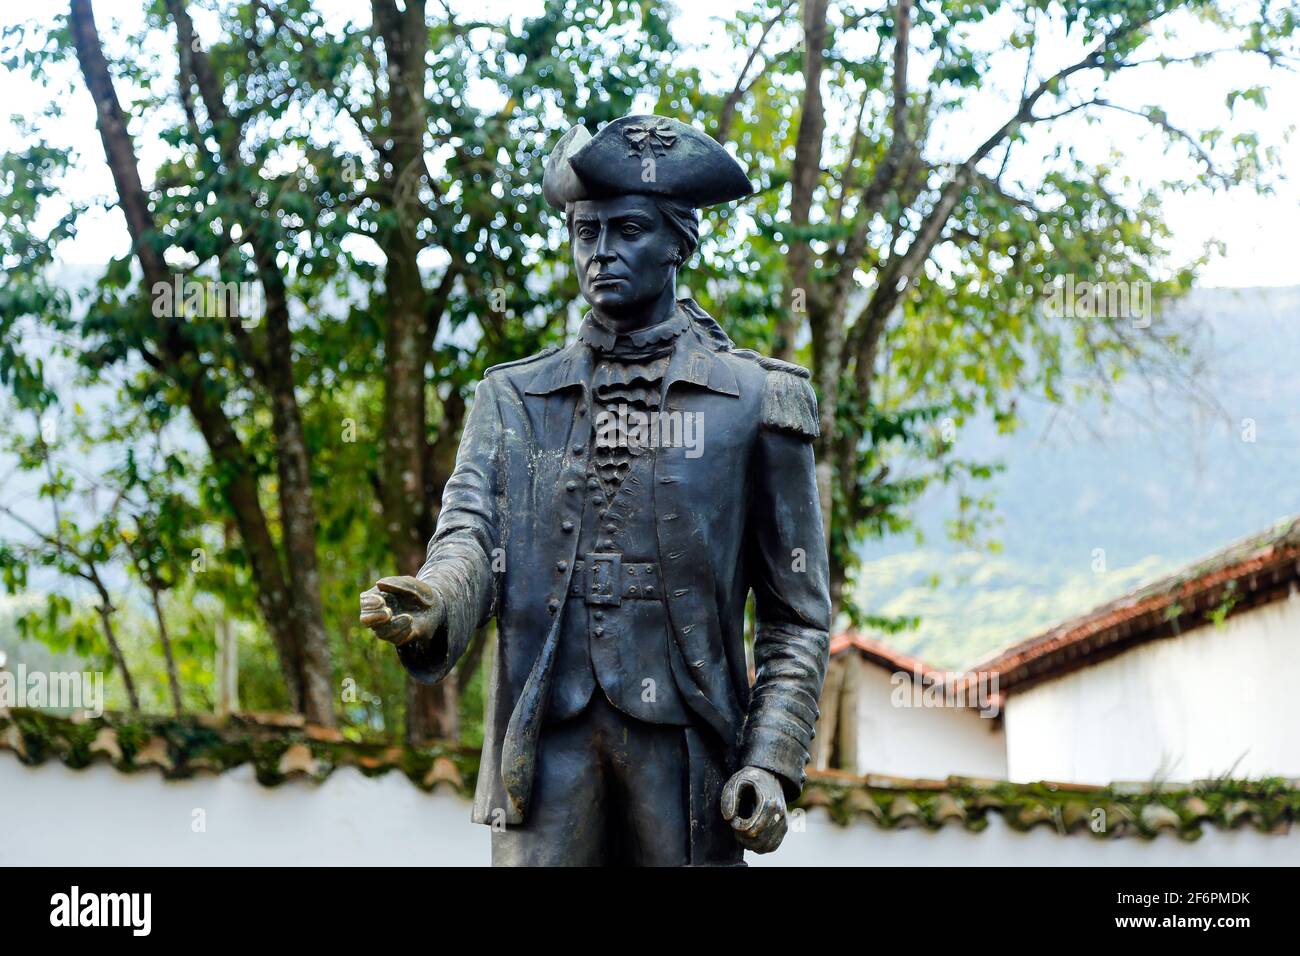 Tiradentes, Minas Gerais, Brésil - 20 février 2021 : statue métallique de Tiradentes représentant le jeune ensign sur une route publique Banque D'Images